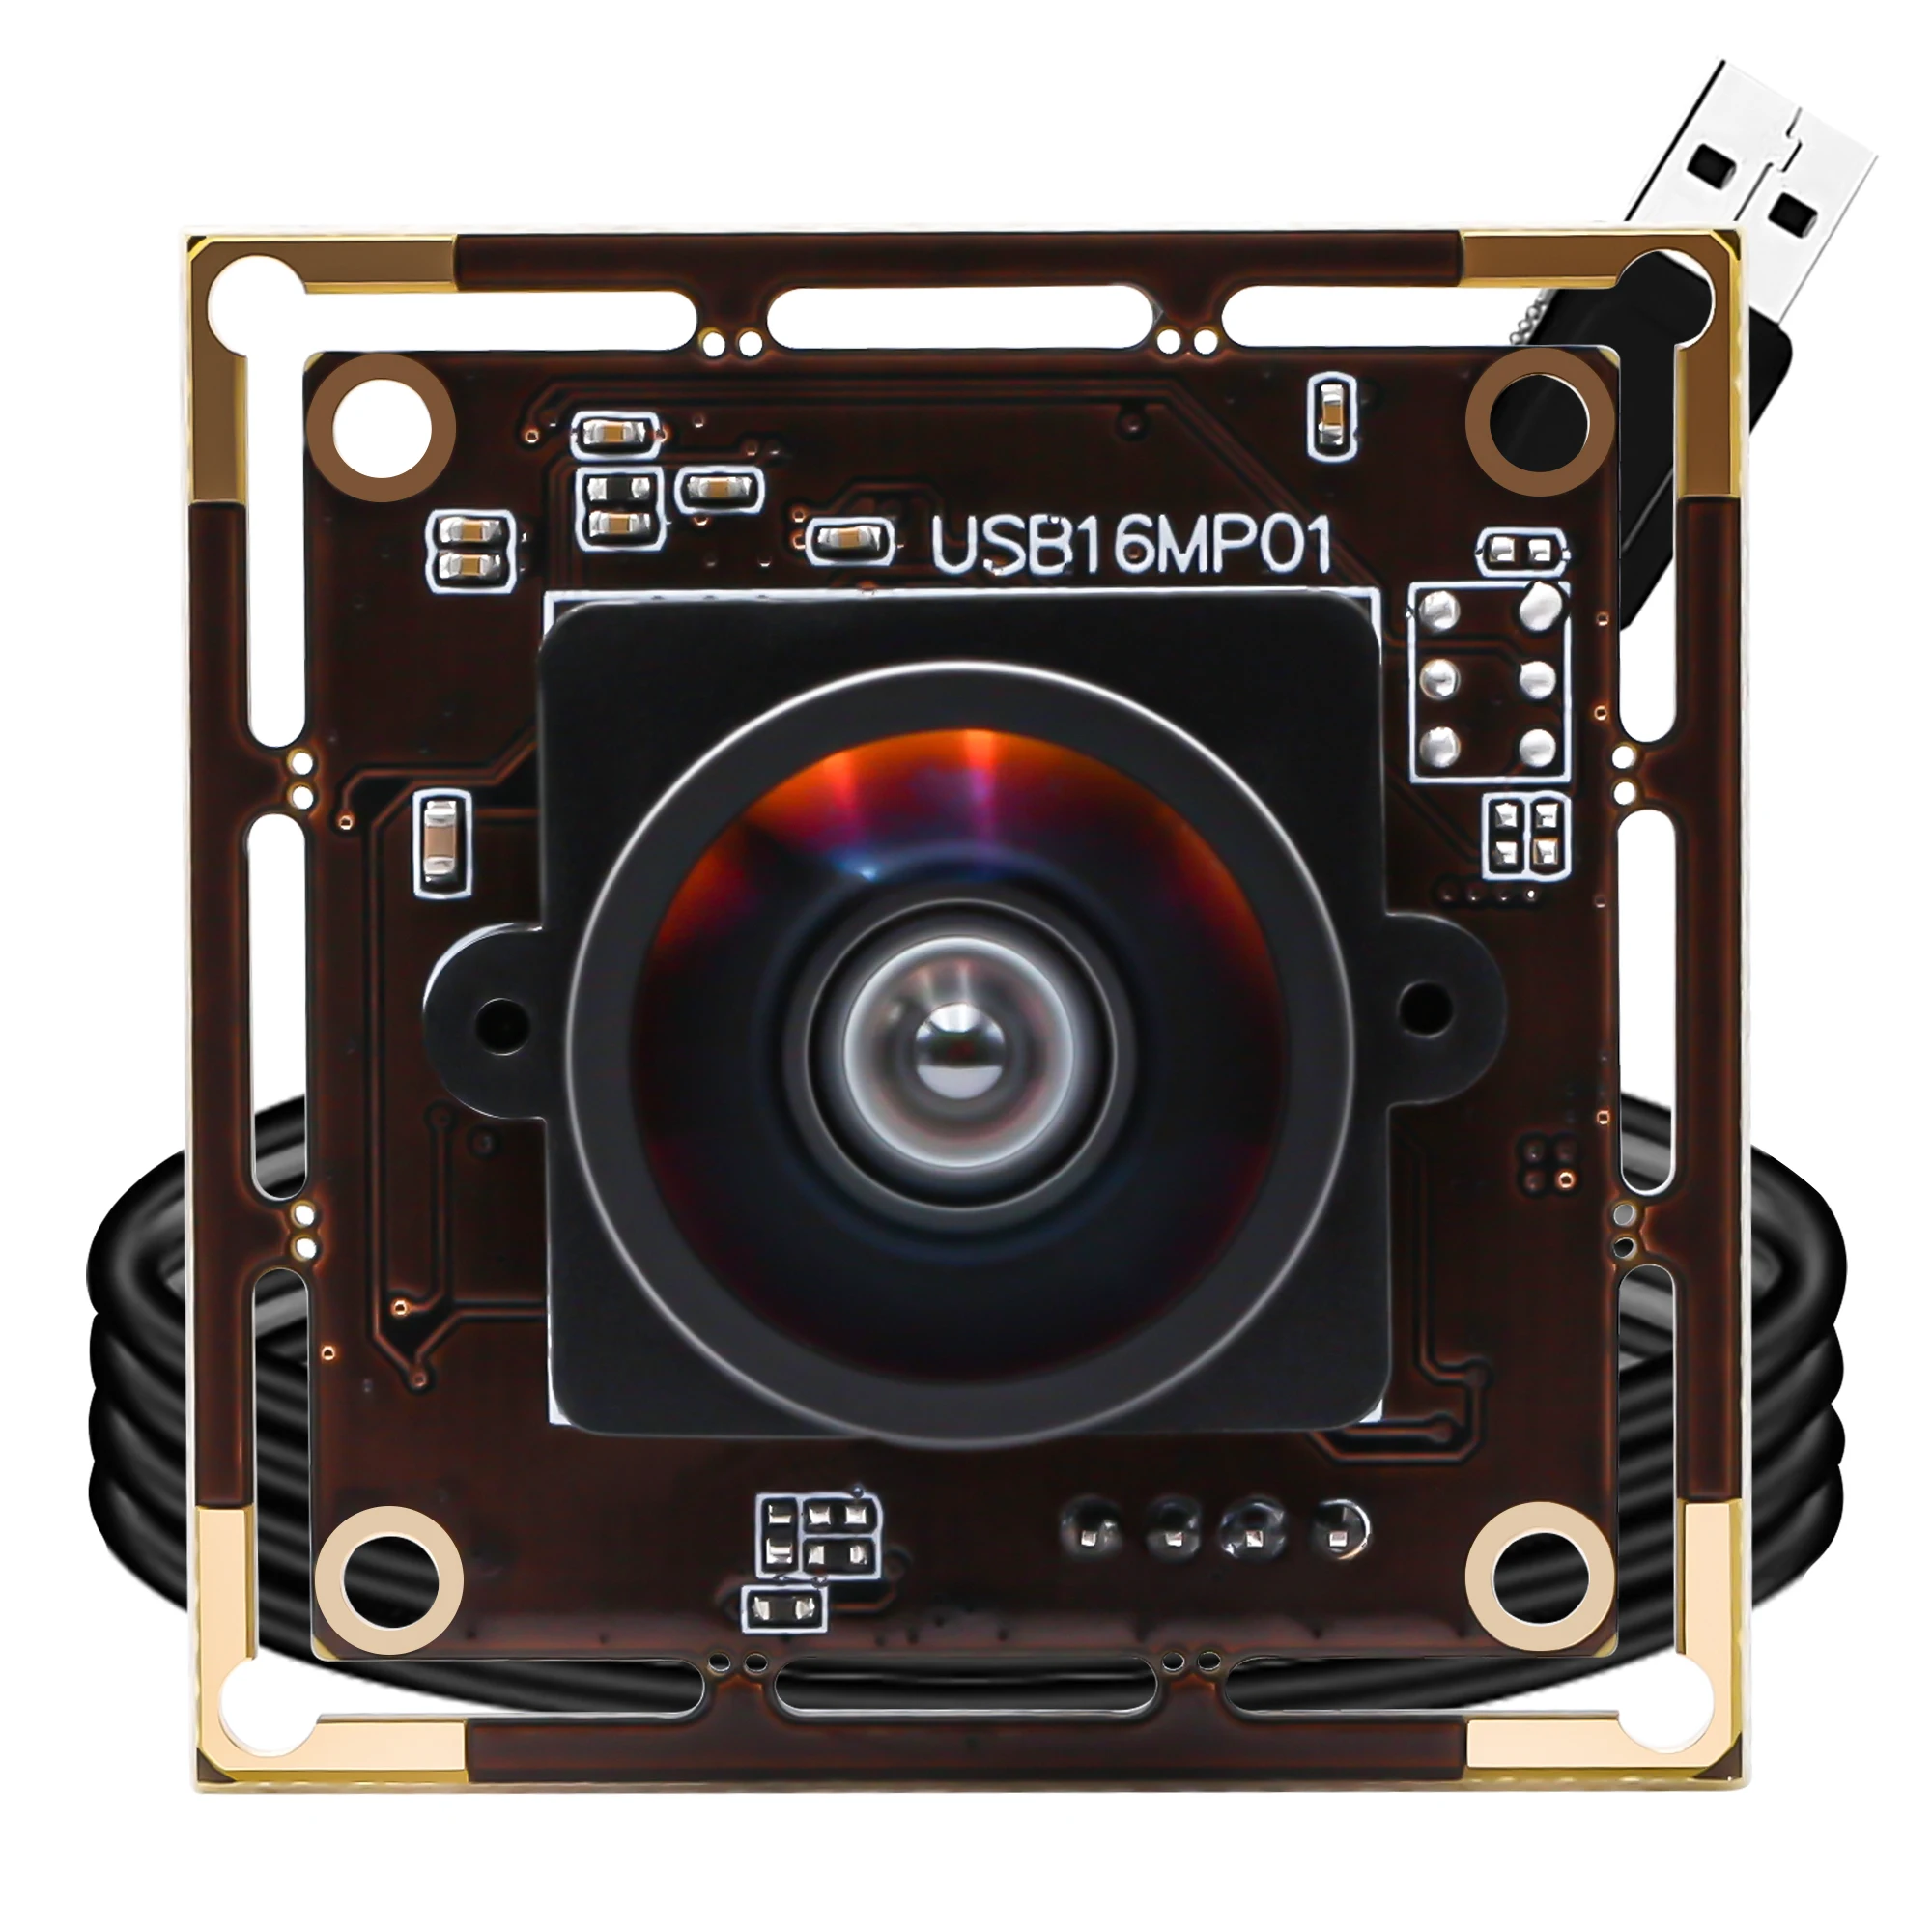 

Модуль USB камеры ELP 16 МП широкоугольный варифокальный объектив CMOS IMX298 Мини HD веб-камера ПК Цифровая USB2.0 камера для съемки документов